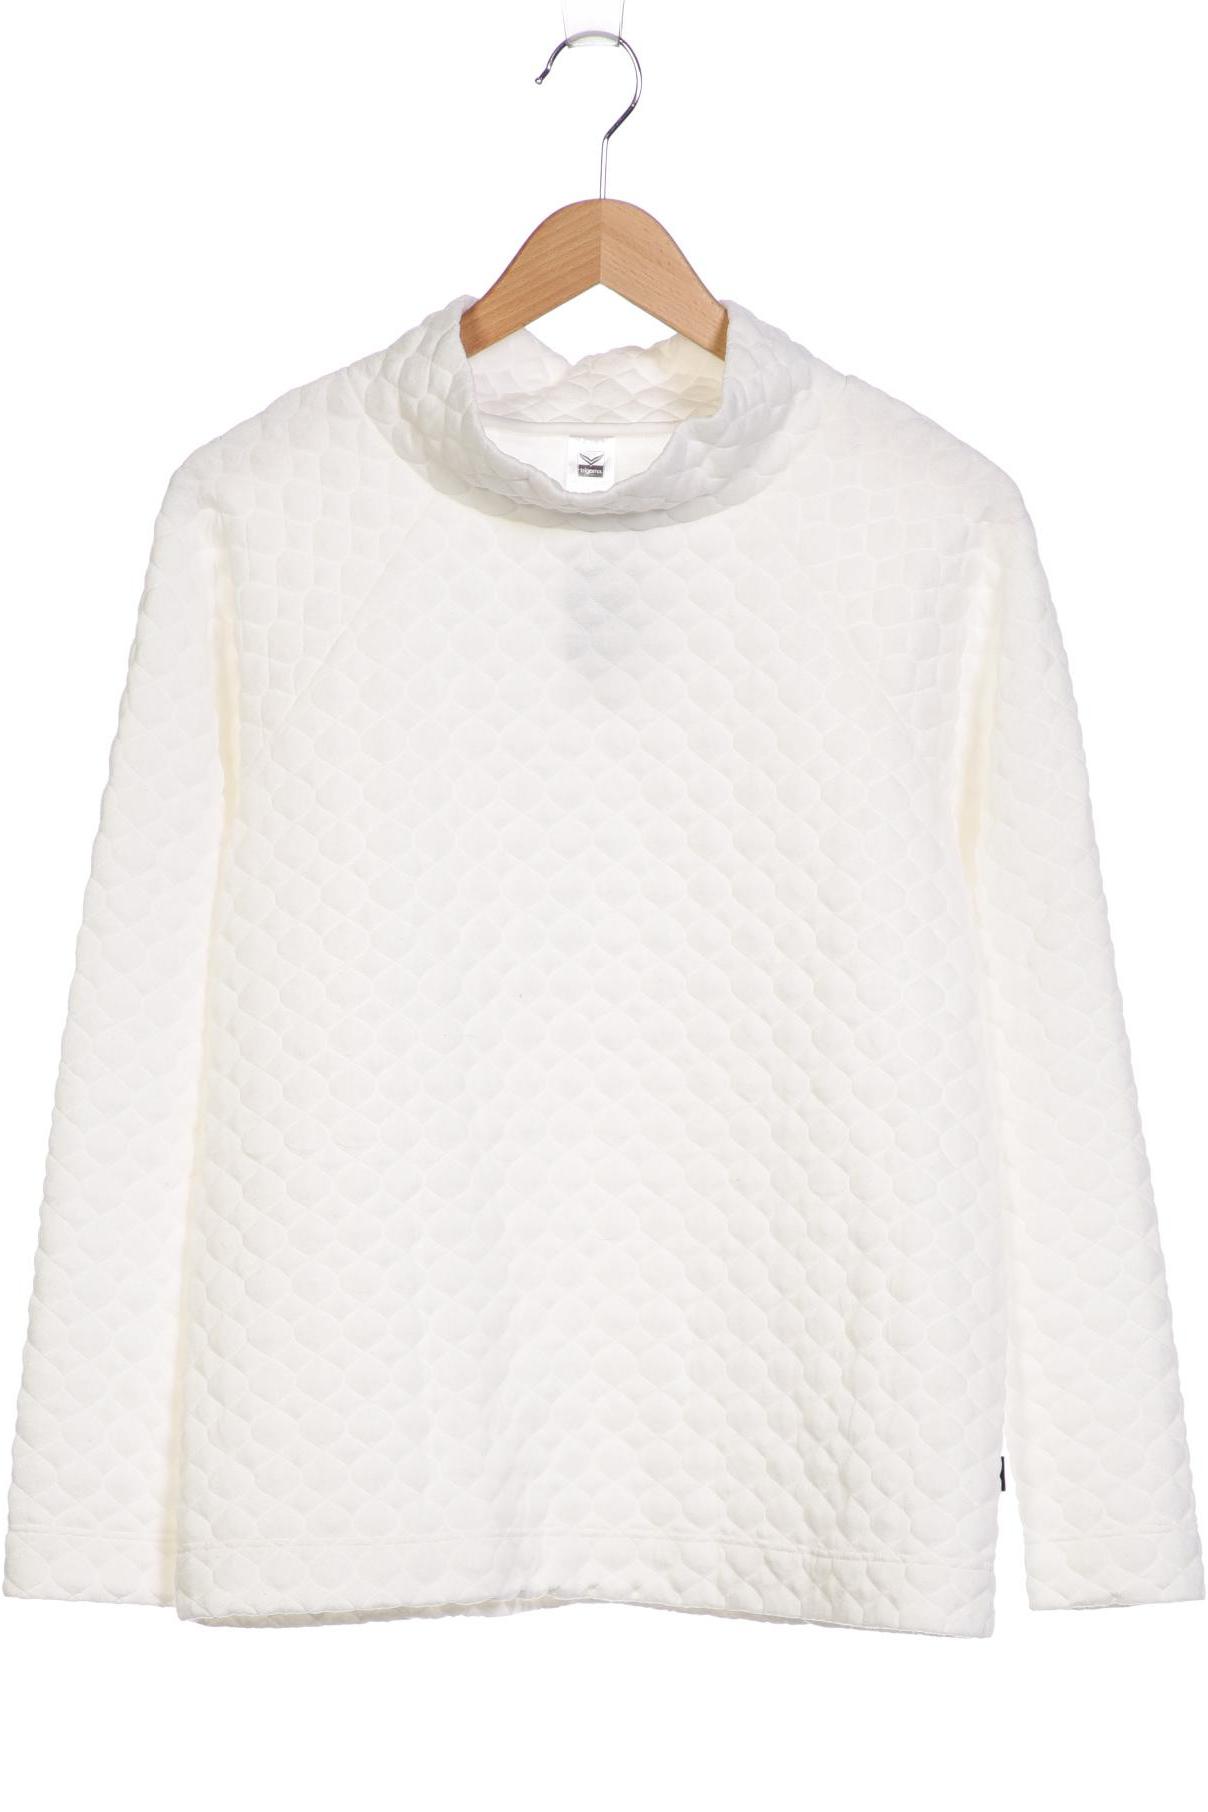 Trigema Damen Sweatshirt, weiß, Gr. 42 von Trigema